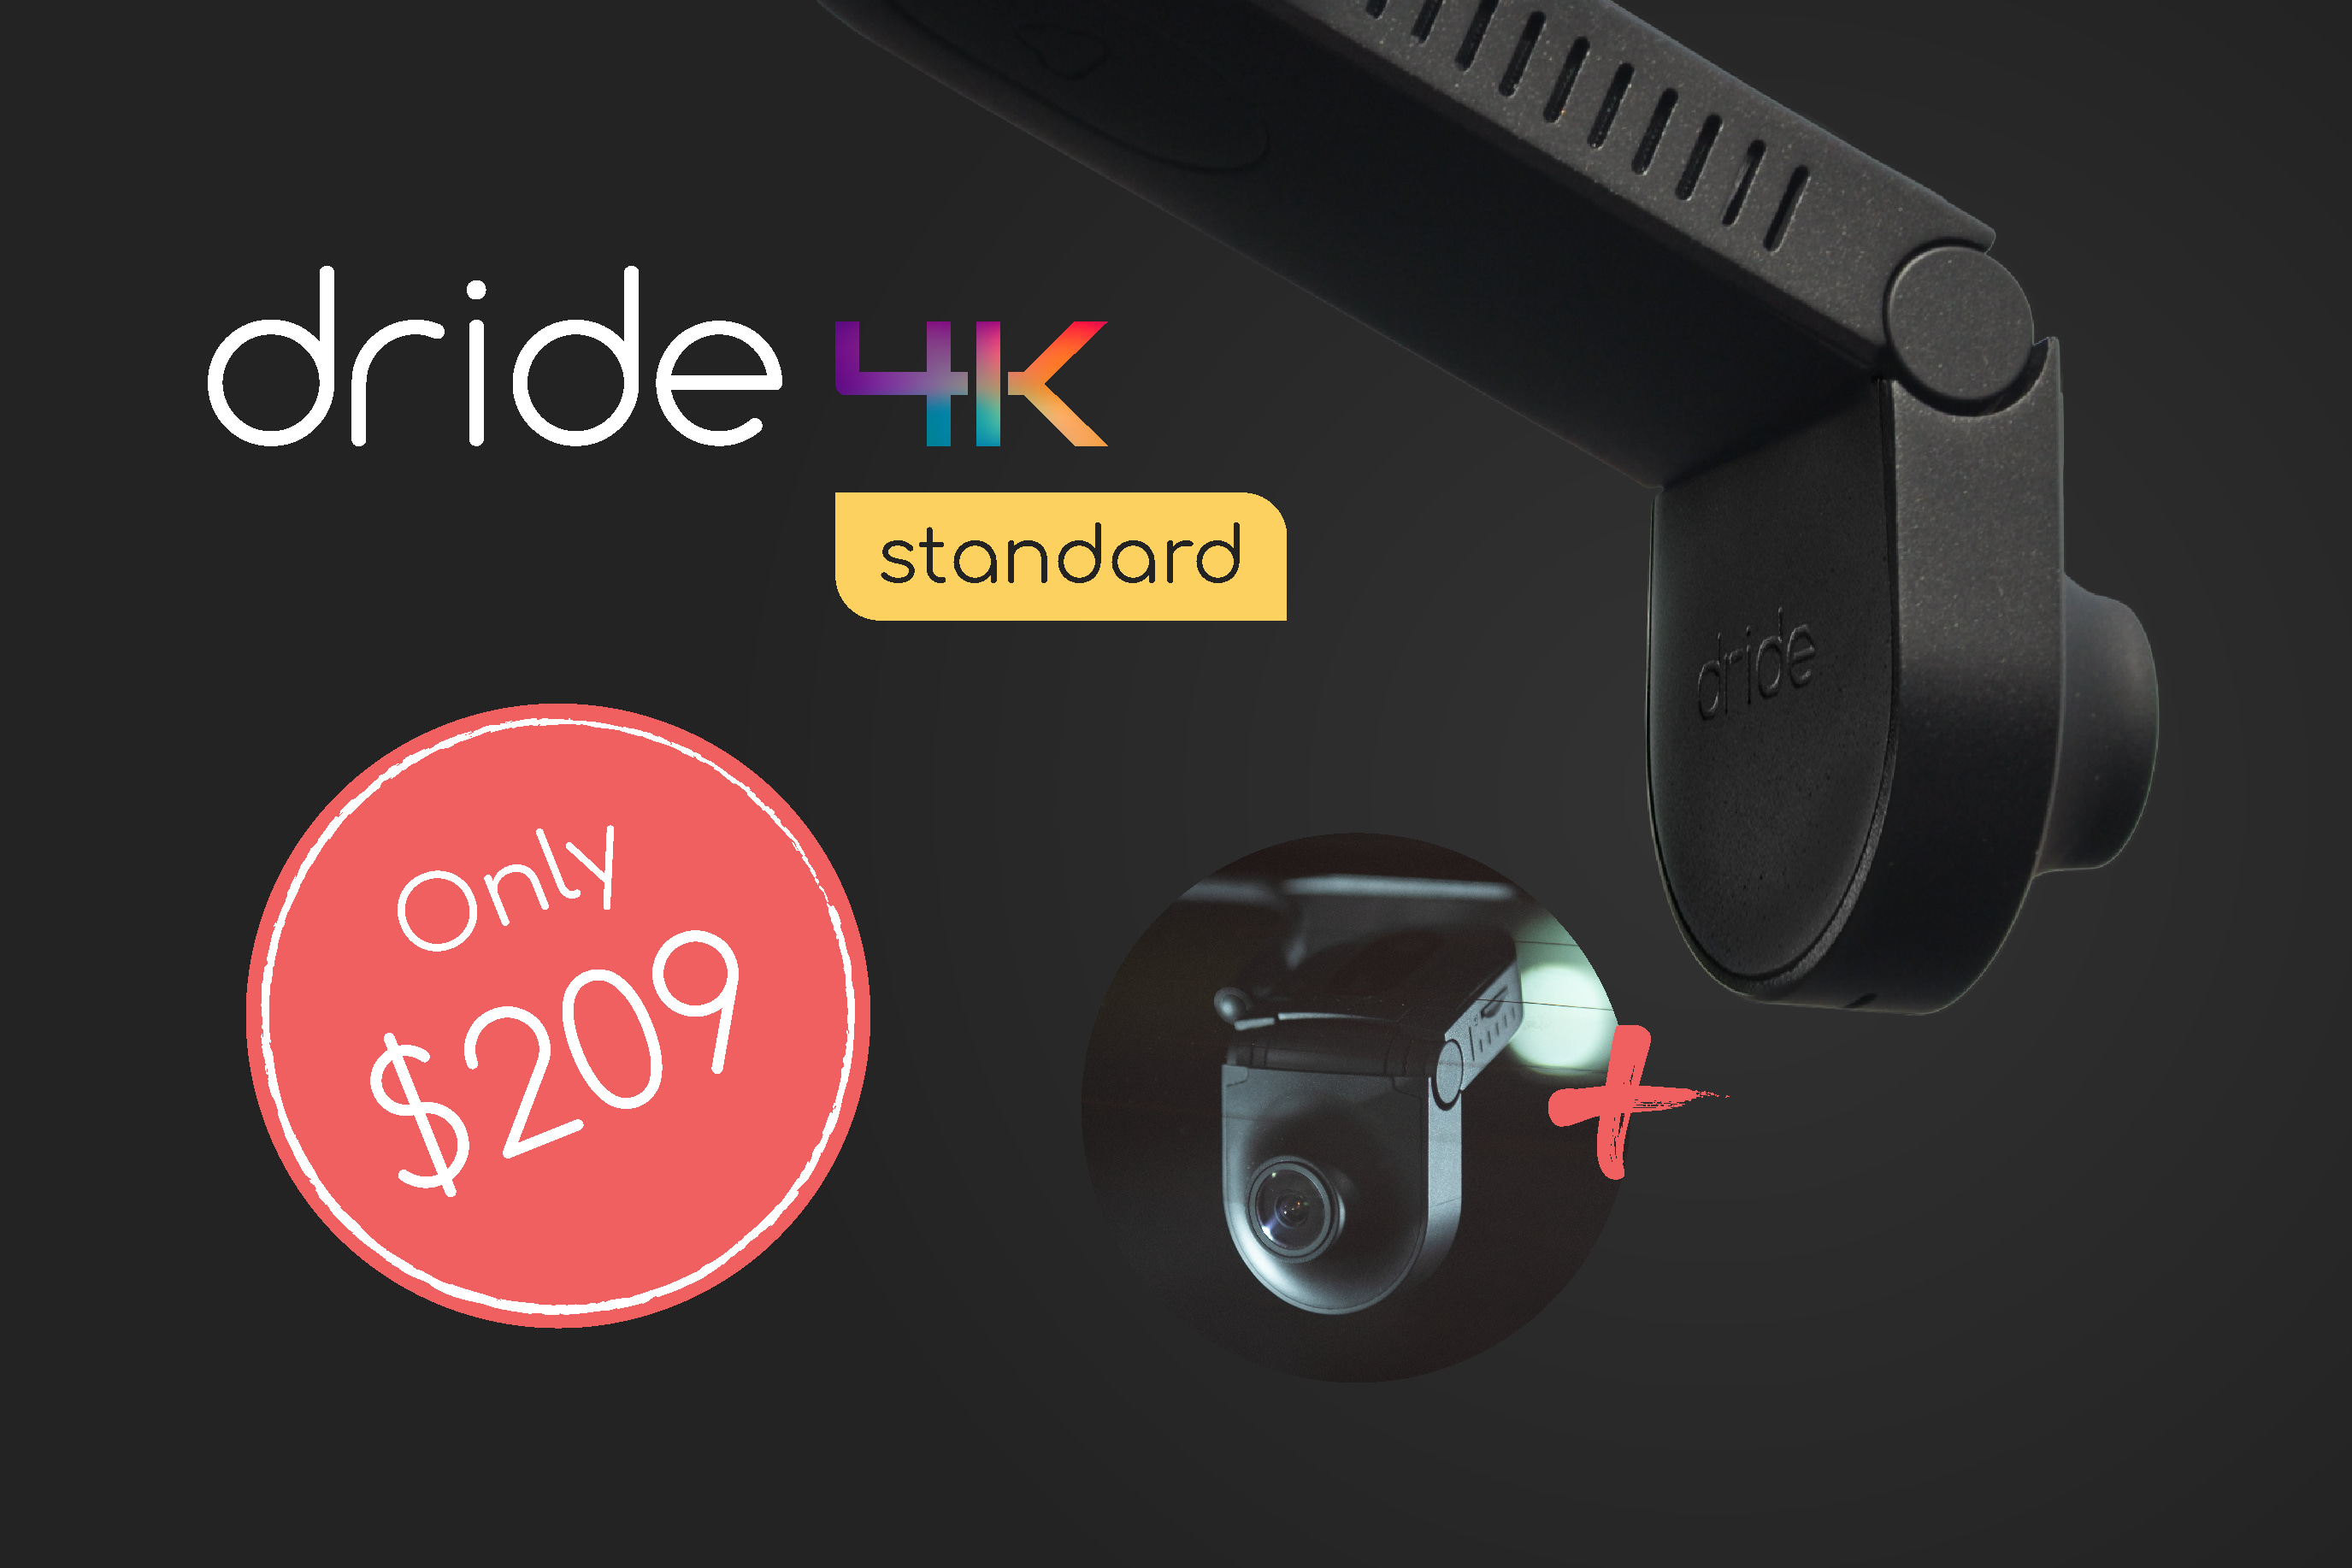 Dride 4K  Next gen connected dashcam by Dride, Inc. — Kickstarter